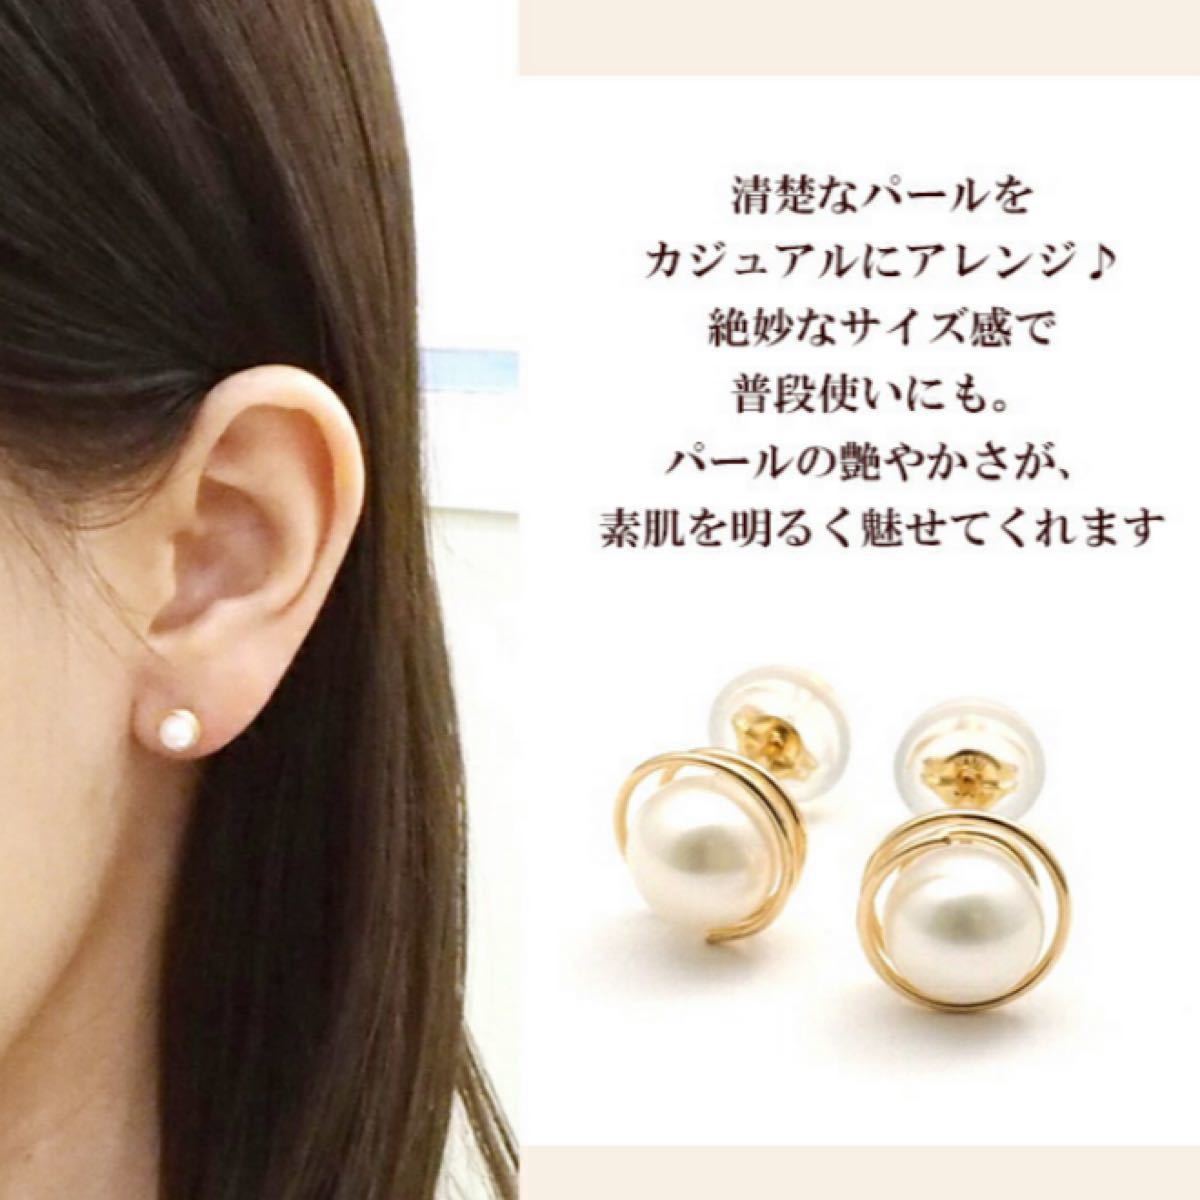 新品 K18 イエローゴールド 真珠 パール 18金ピアス 刻印あり 上質 日本製 ペア